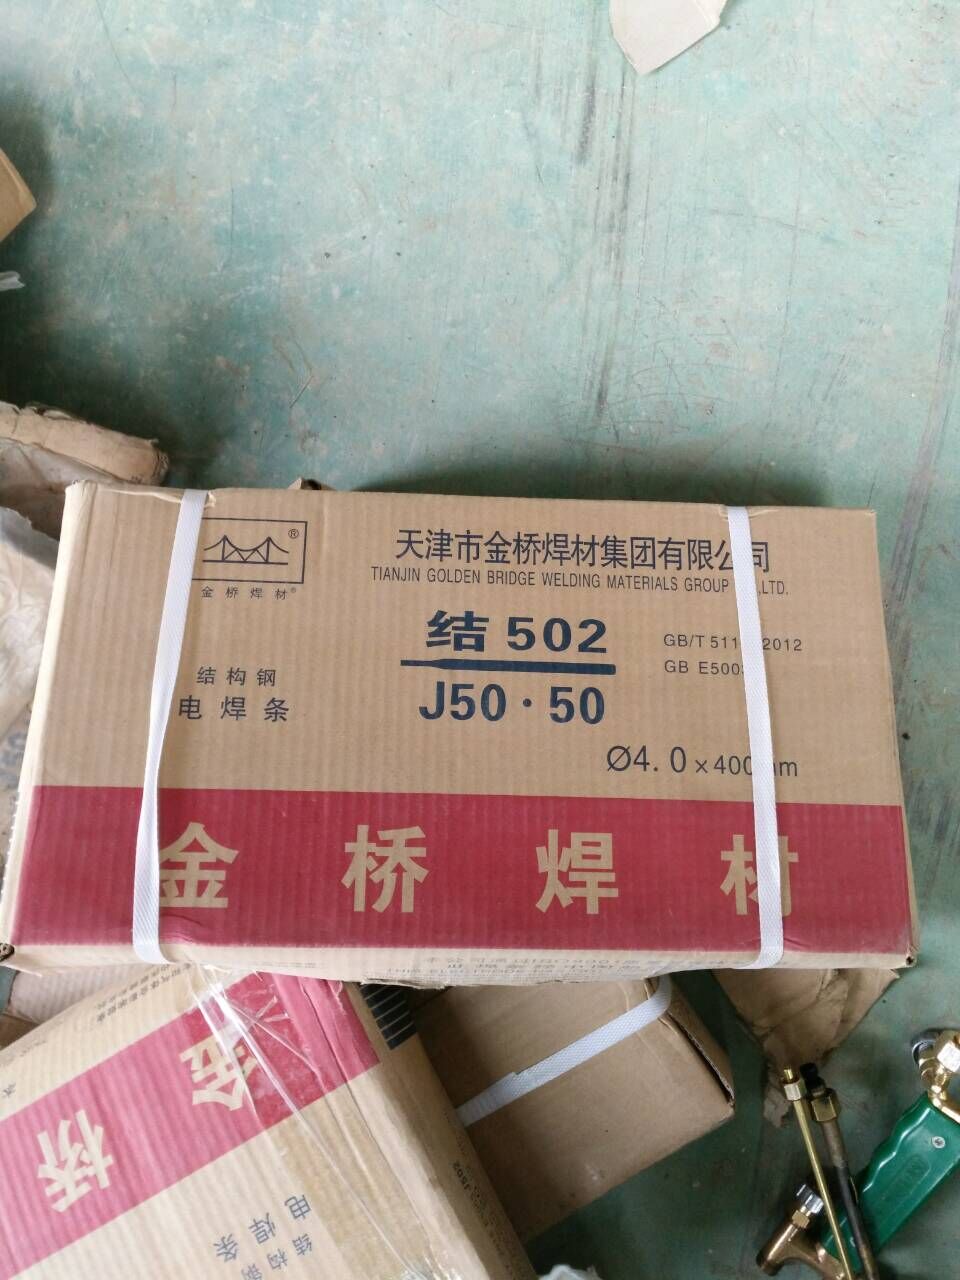 J507天津金桥焊条厂